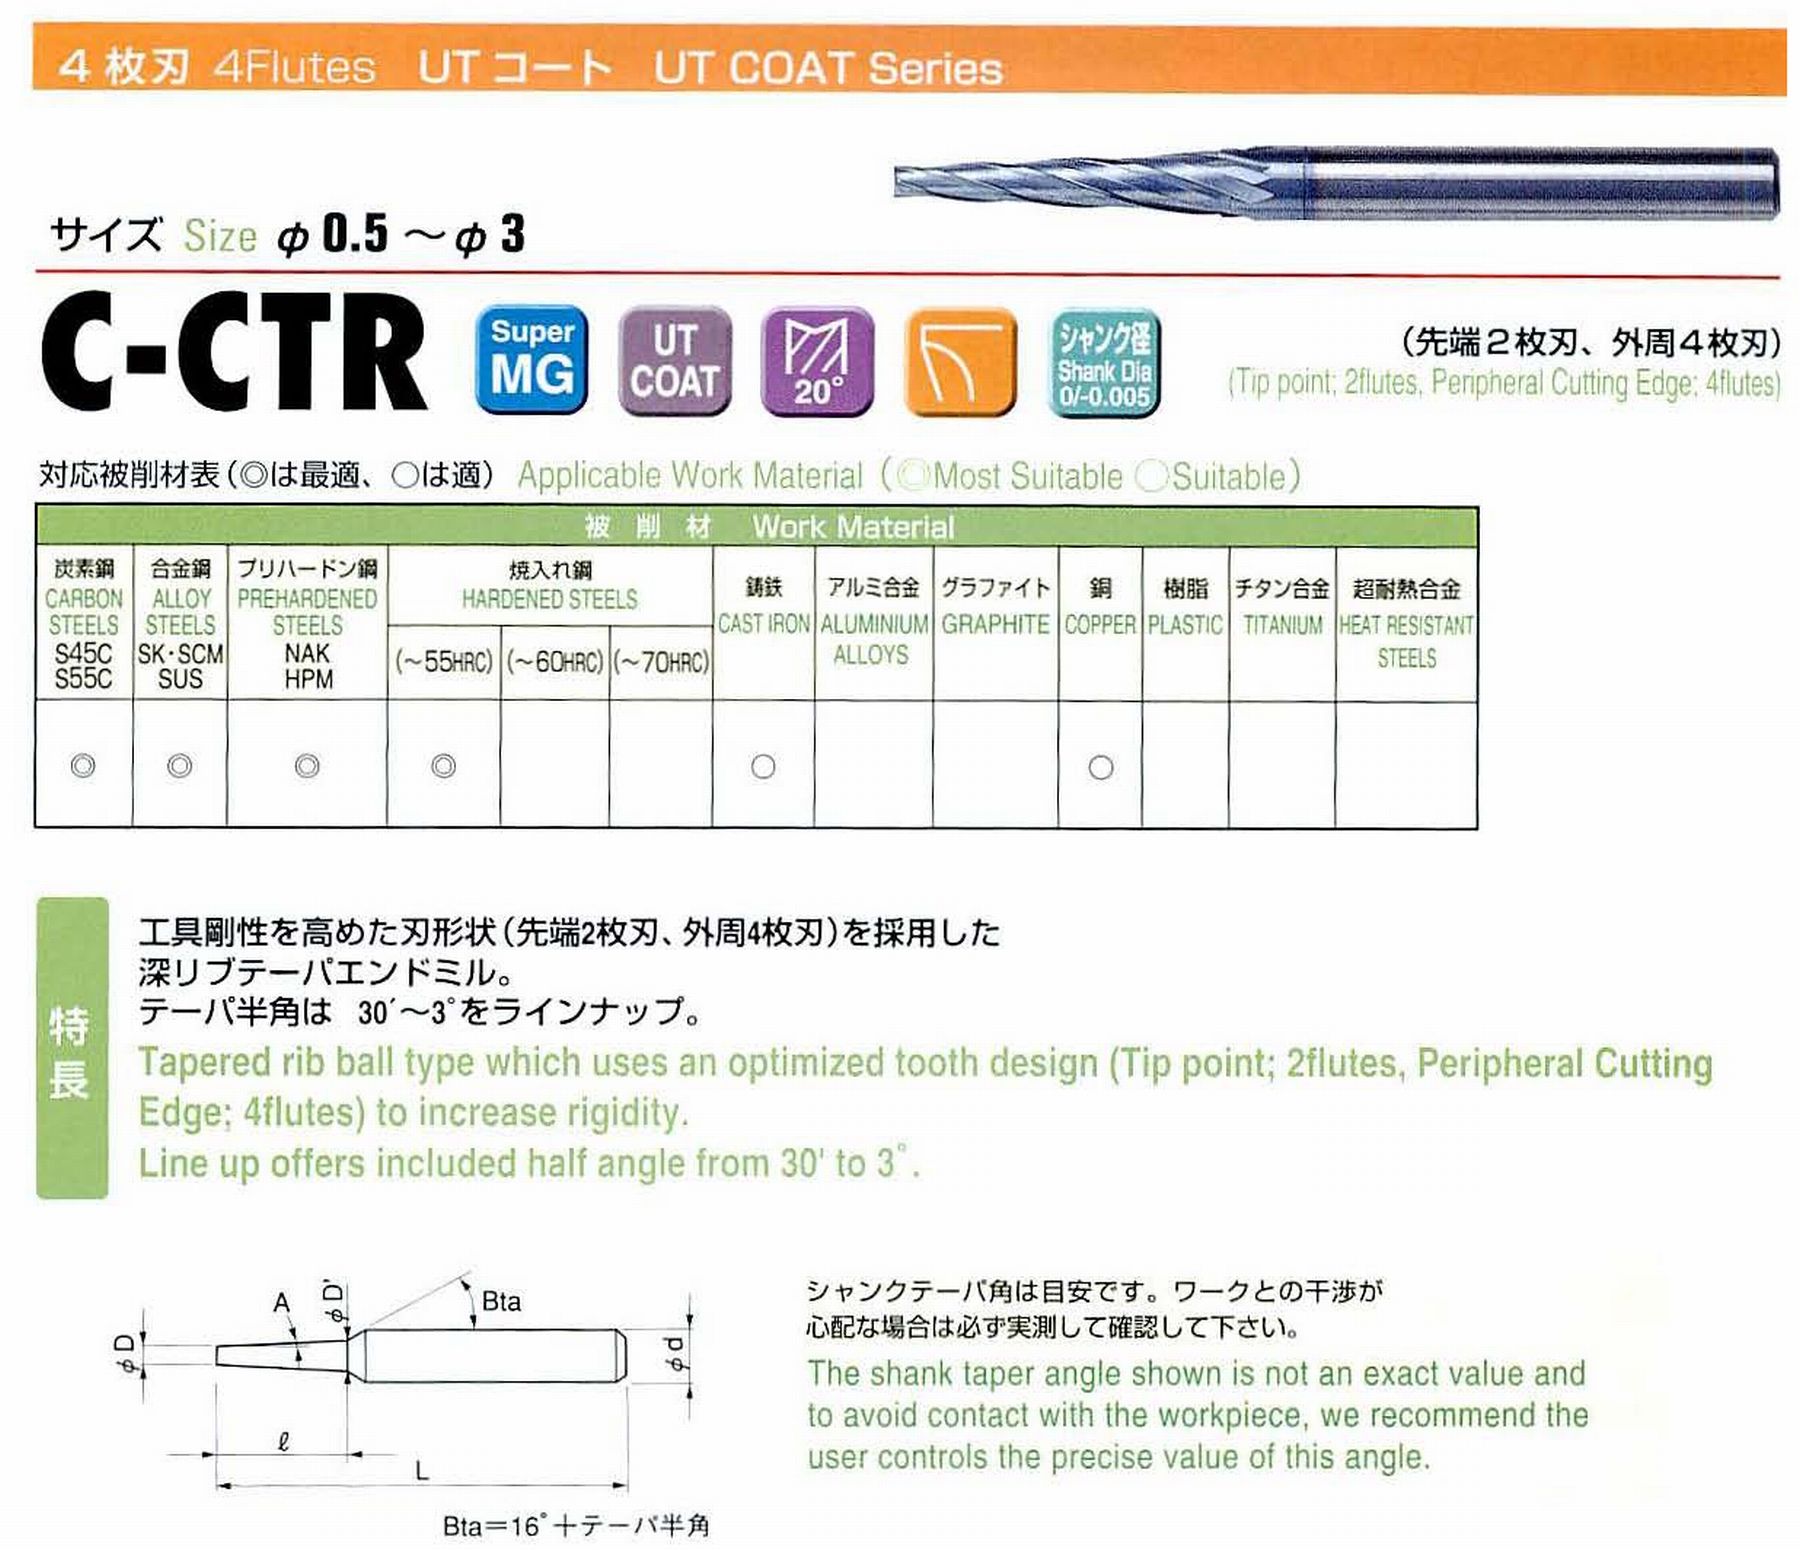 ユニオンツール 4枚刃 C-CTR4015-16-3 先端径1.5 テーパ半角1°30′ 刃長16 大端径2.34 全長55 シャンク径4